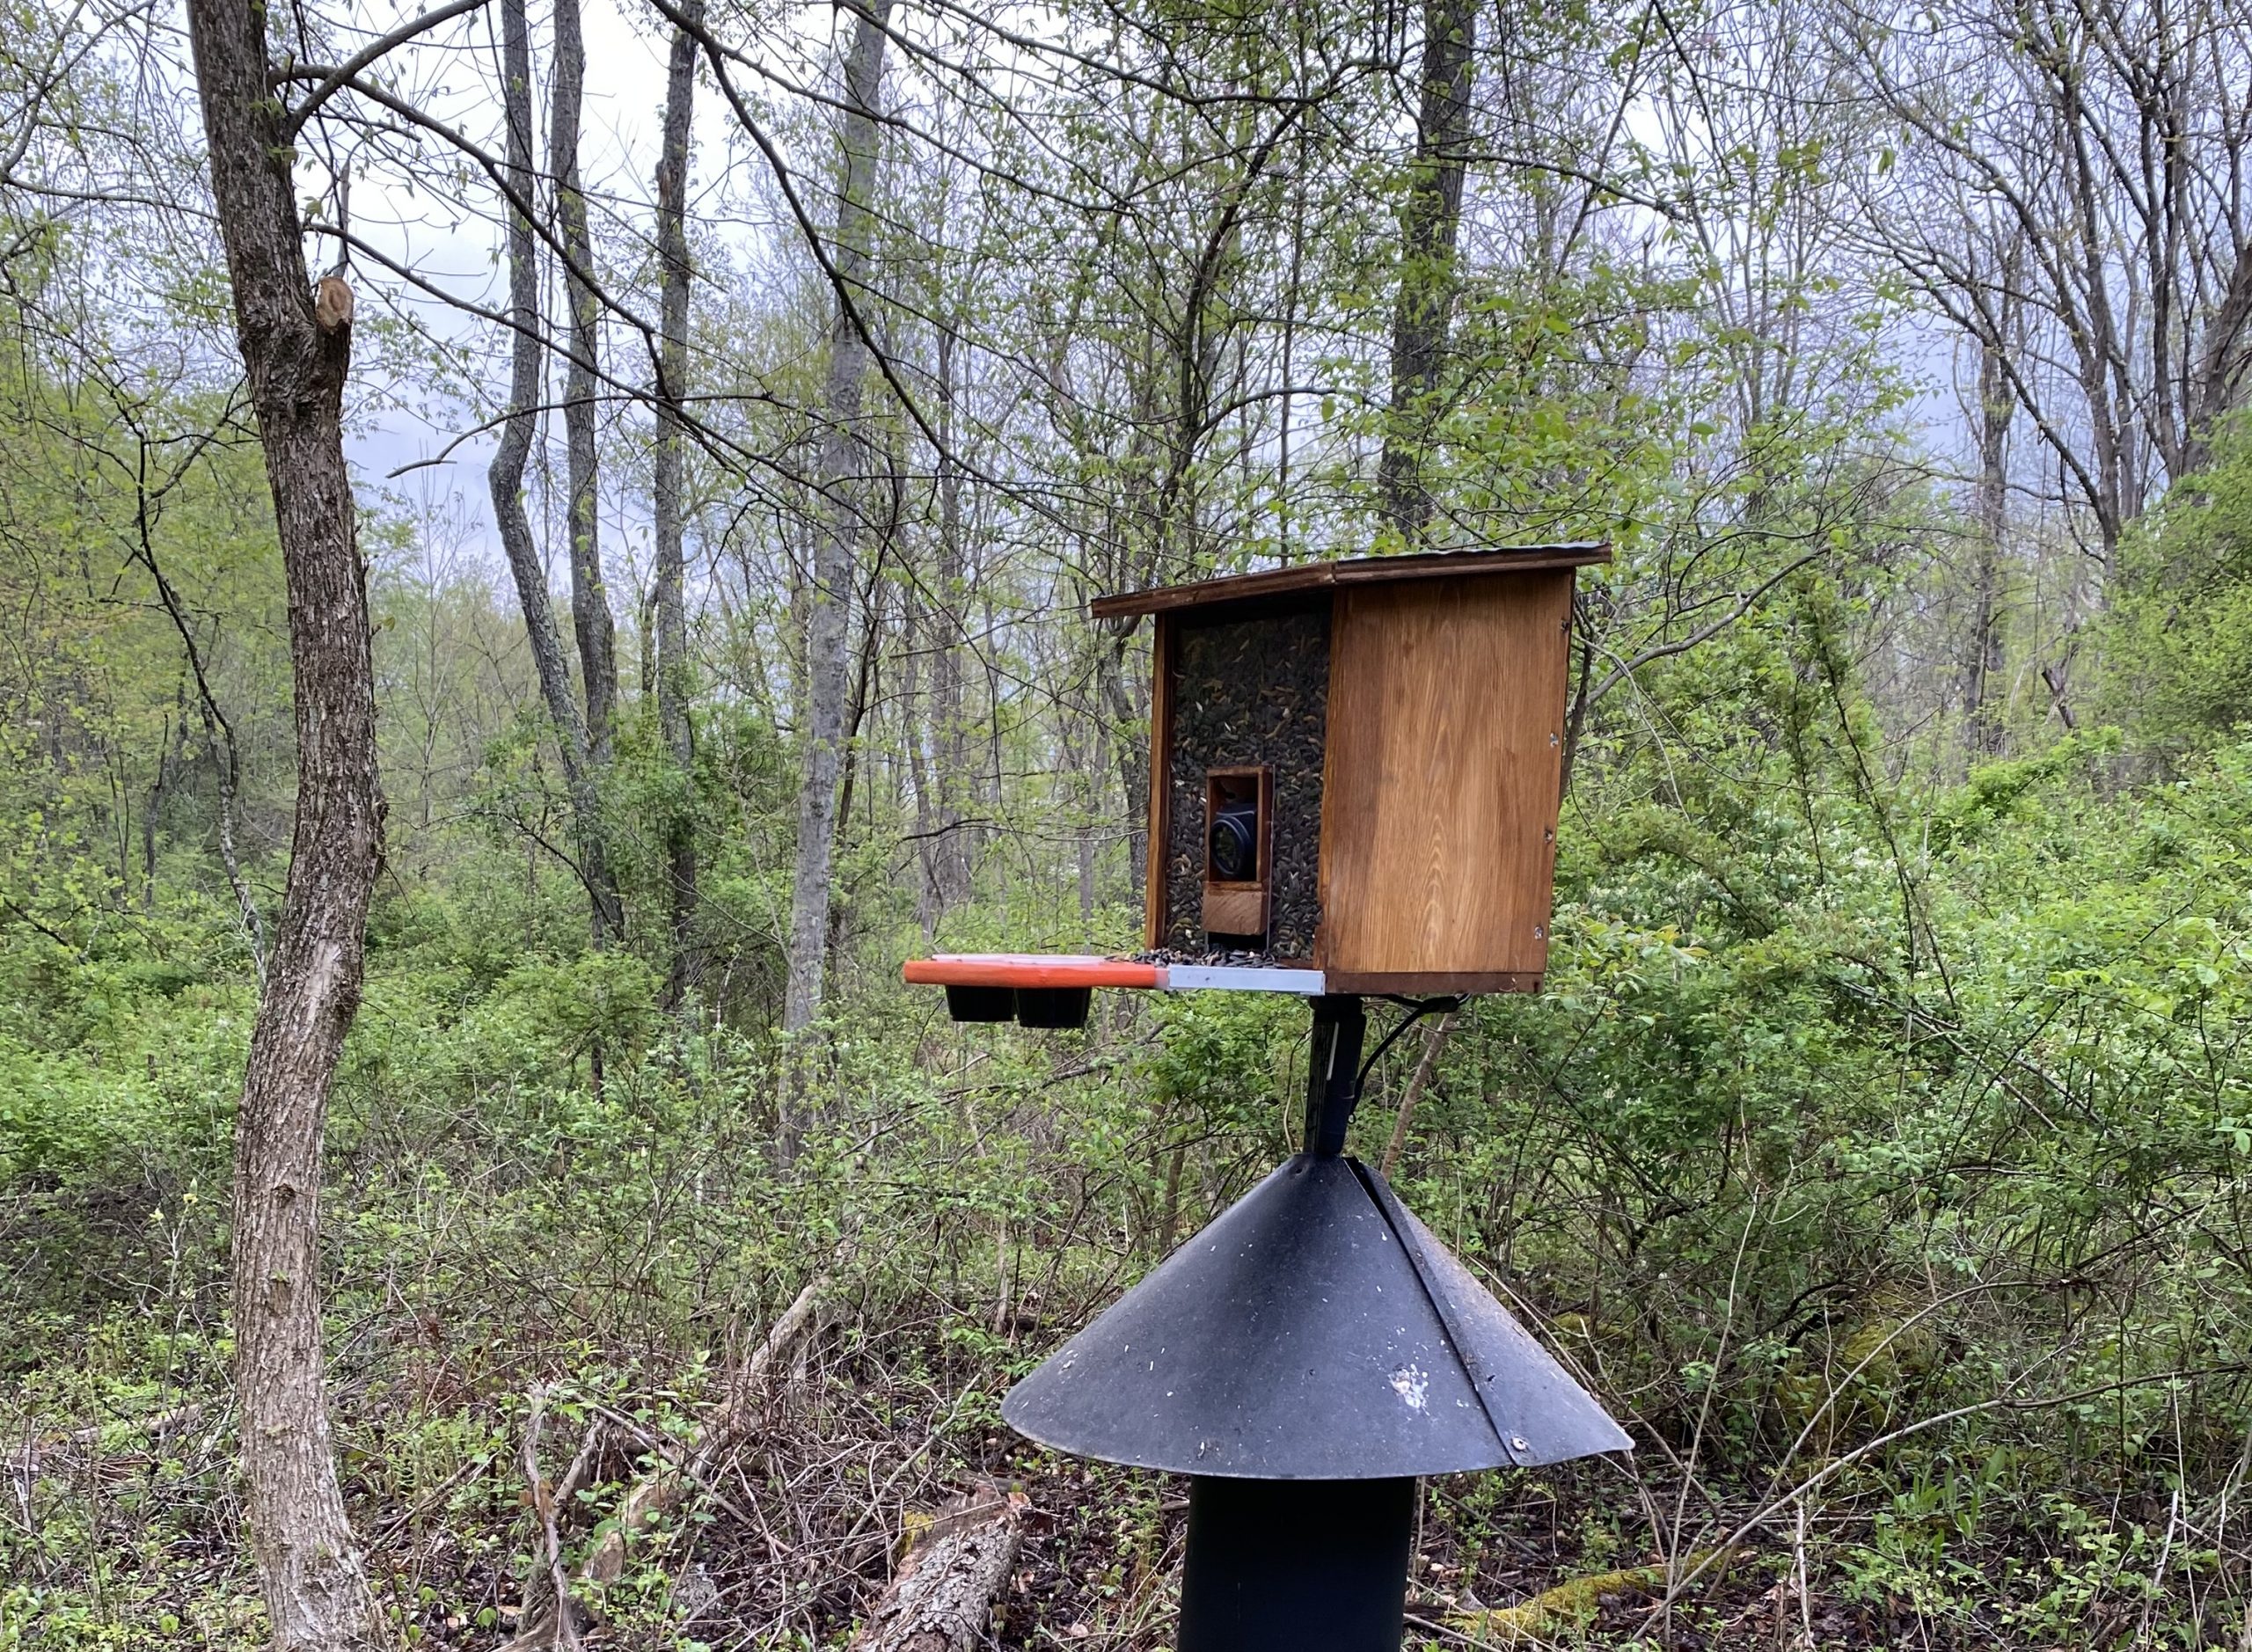 New, custom made, live-stream camera designed for up-close bird viewing.